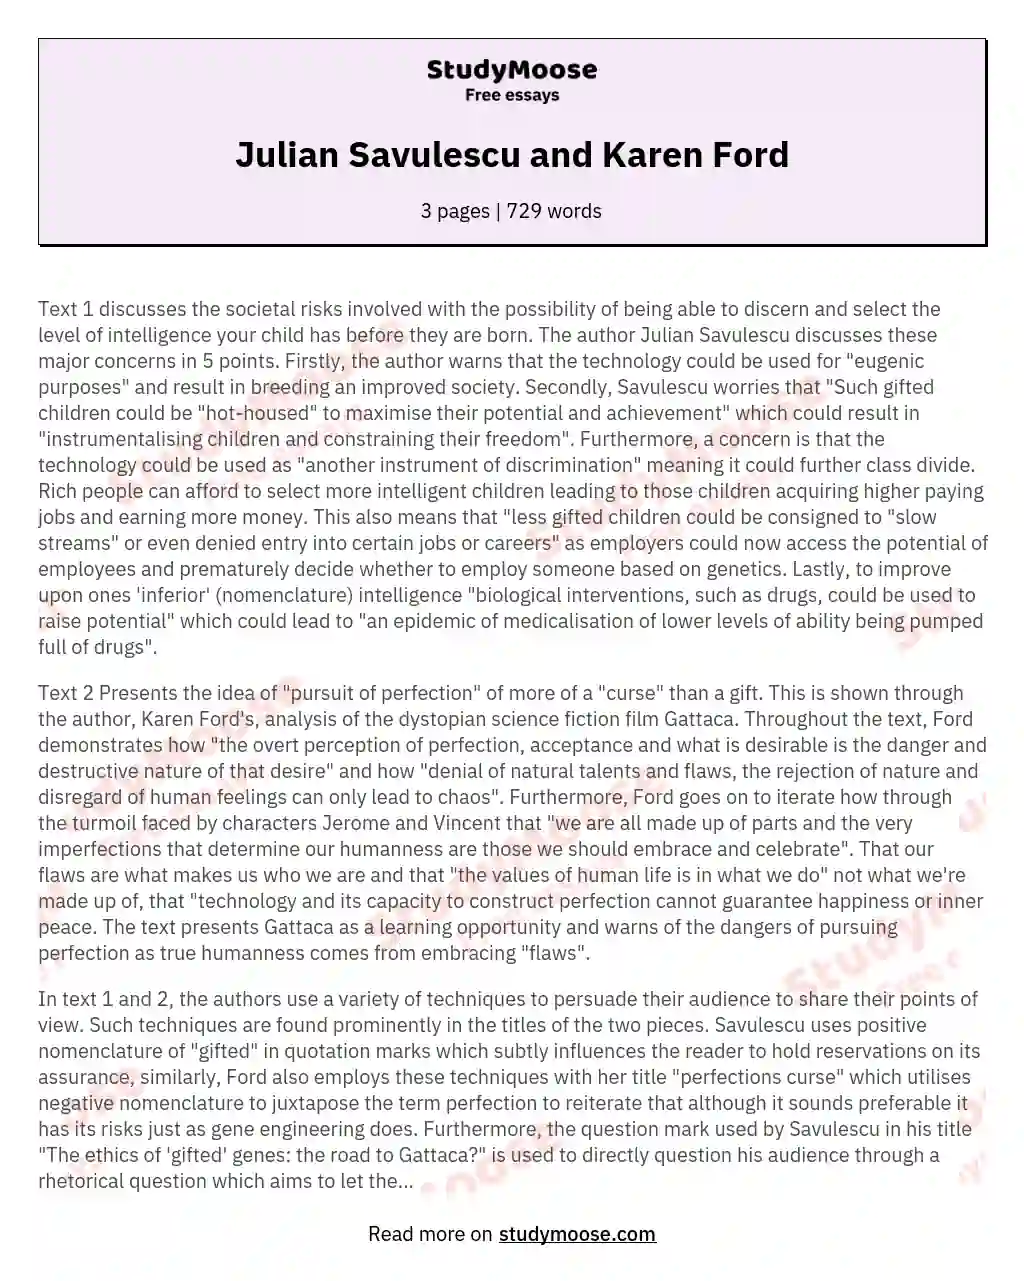 Julian Savulescu and Karen Ford essay